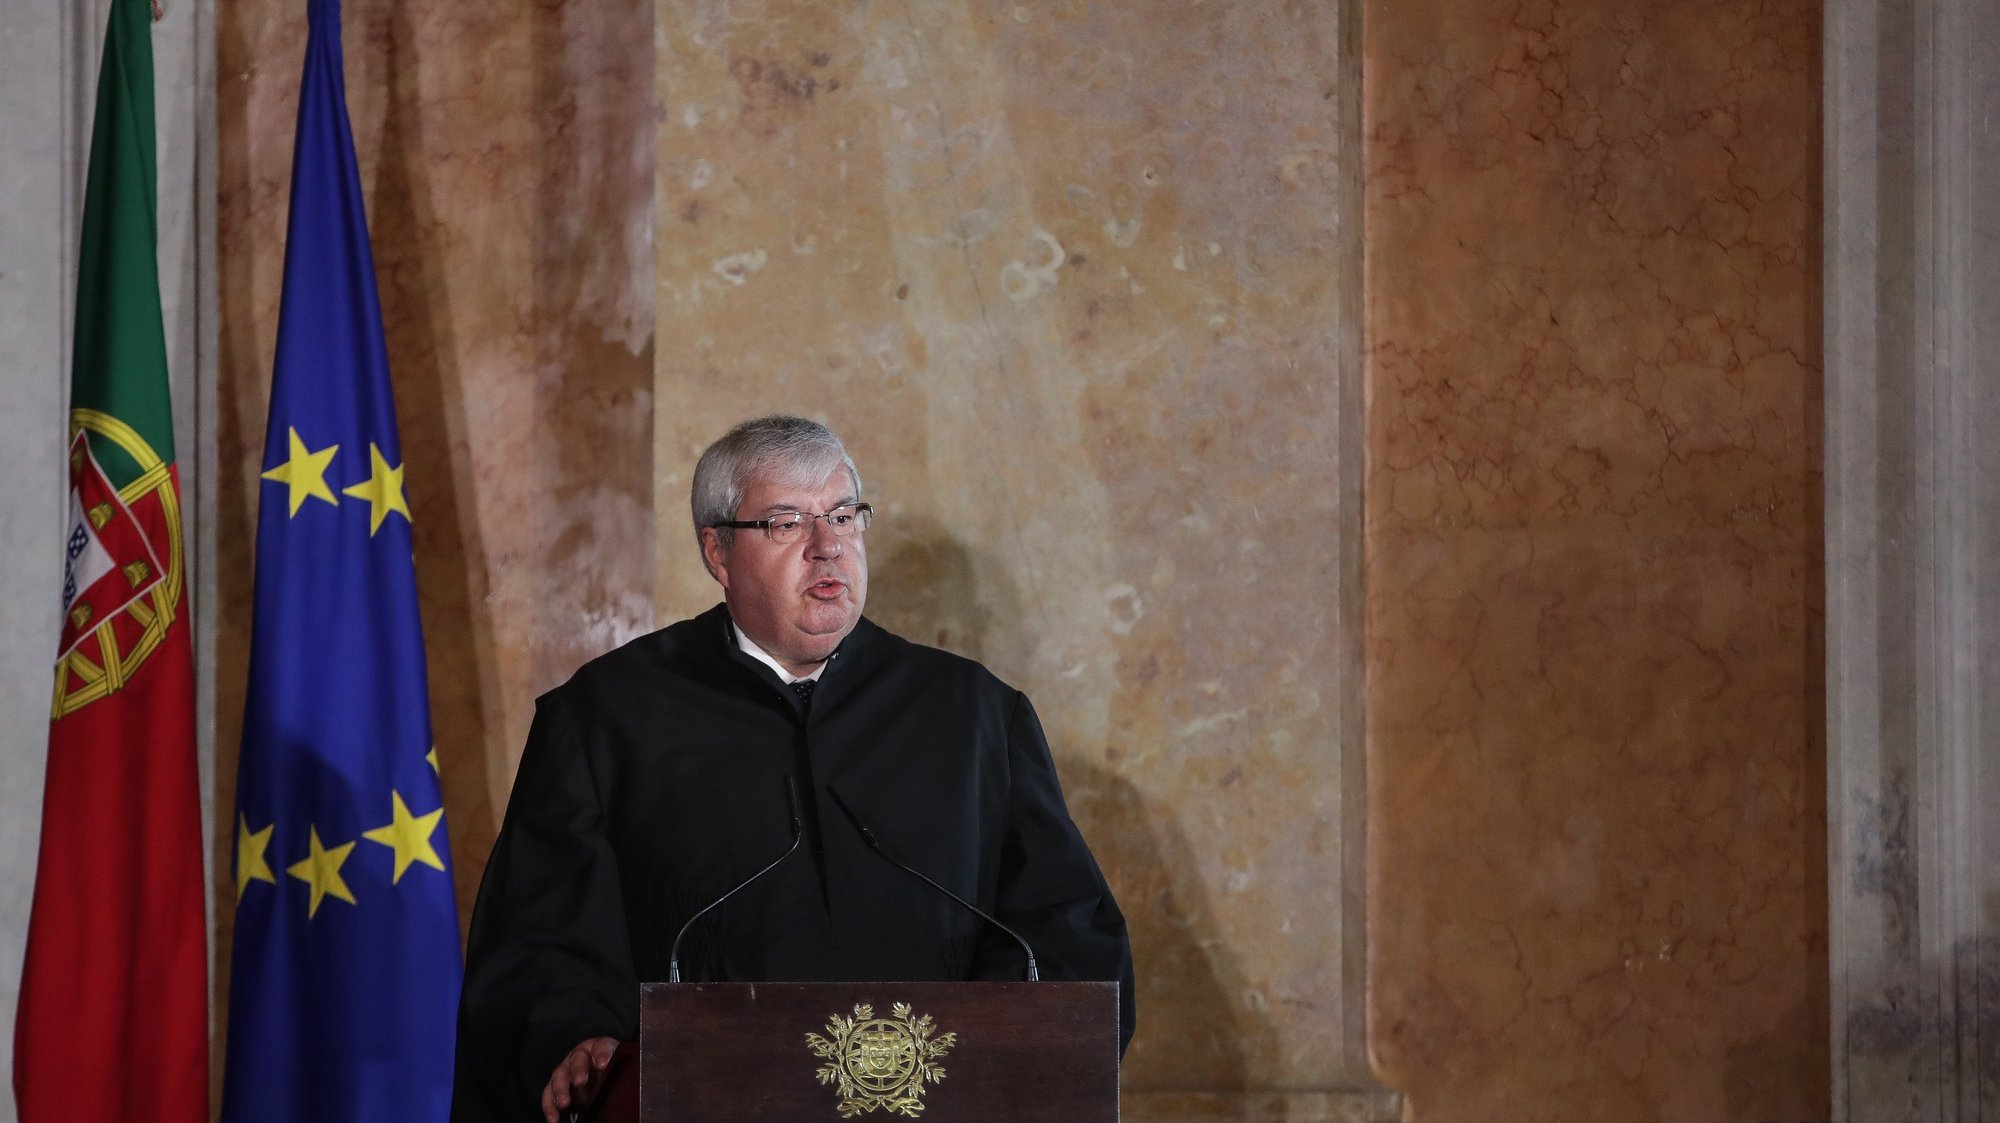 O bastonário da Ordem dos Advogados eleito, Guilherme Figueiredo, intervém na sessão solene de abertura do ano judicial, no Palácio Nacional da Ajuda, em Lisboa, 6 de janeiro de 2020. MÁRIO CRUZ/LUSA